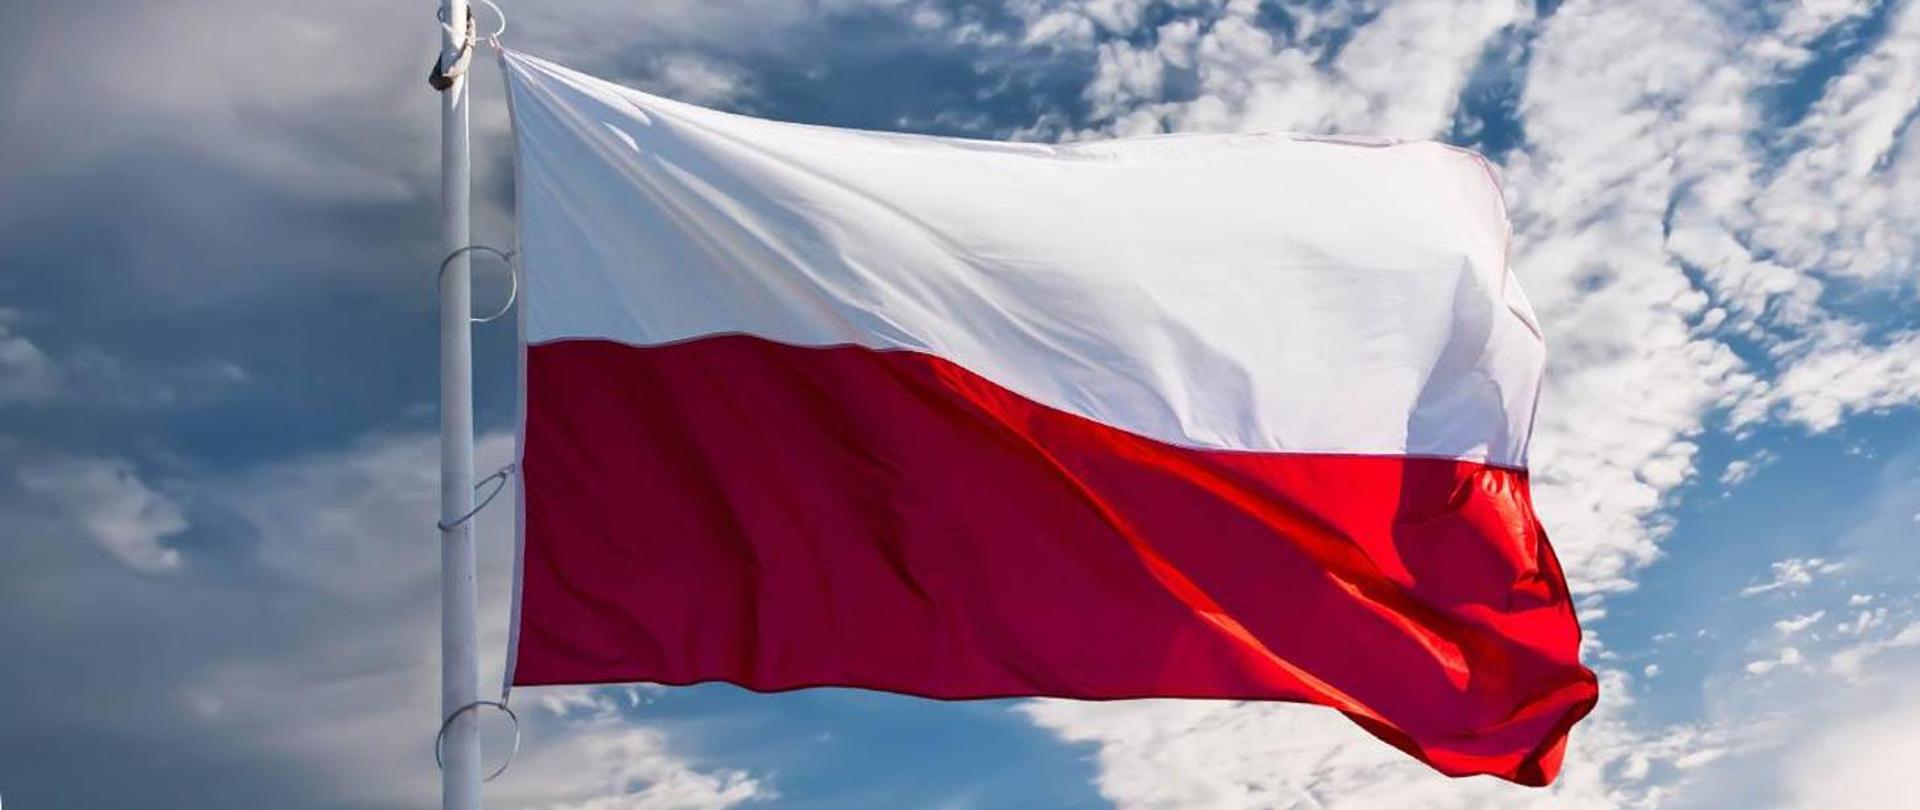 Na pierwszym planie powiewająca flaga Polski zawieszona na maszcie. Tło zdjęcia to słoneczne lekko zachmurzone niebo